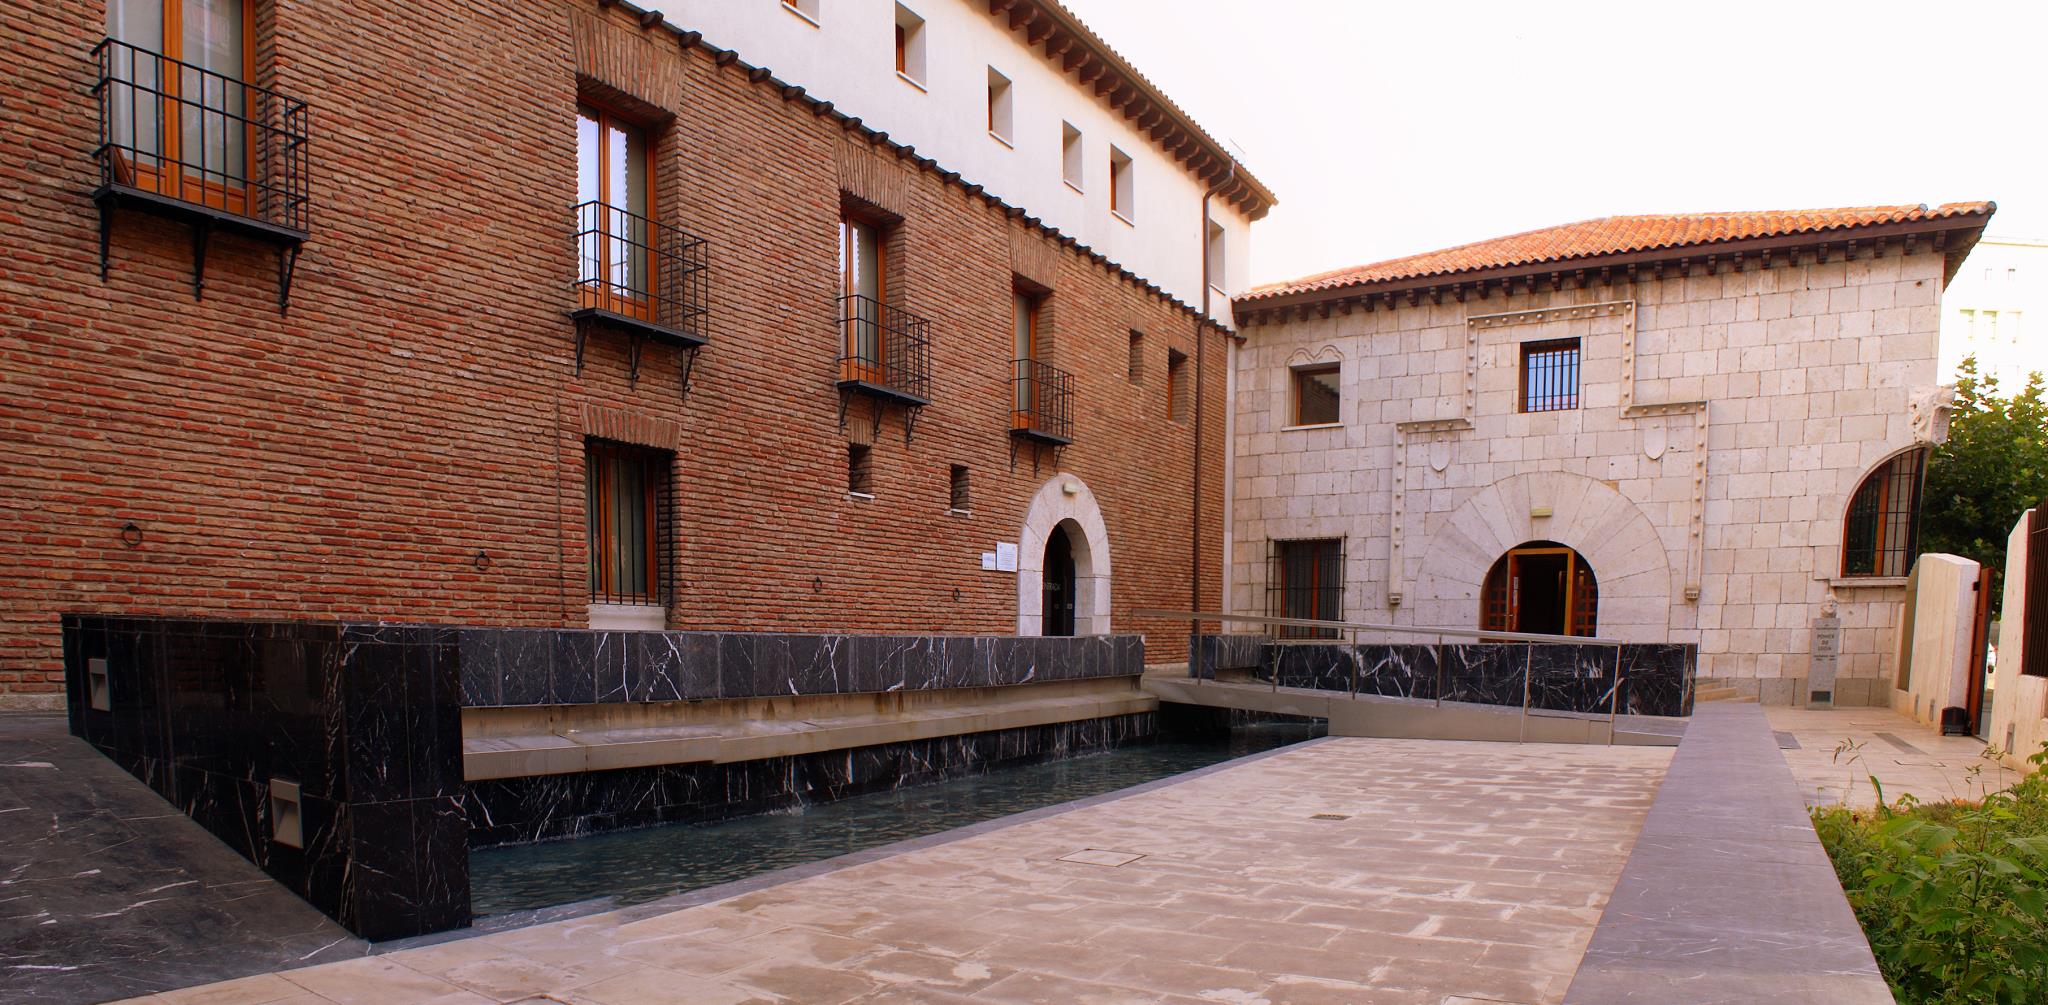 Museo de Colón, de Valladolid